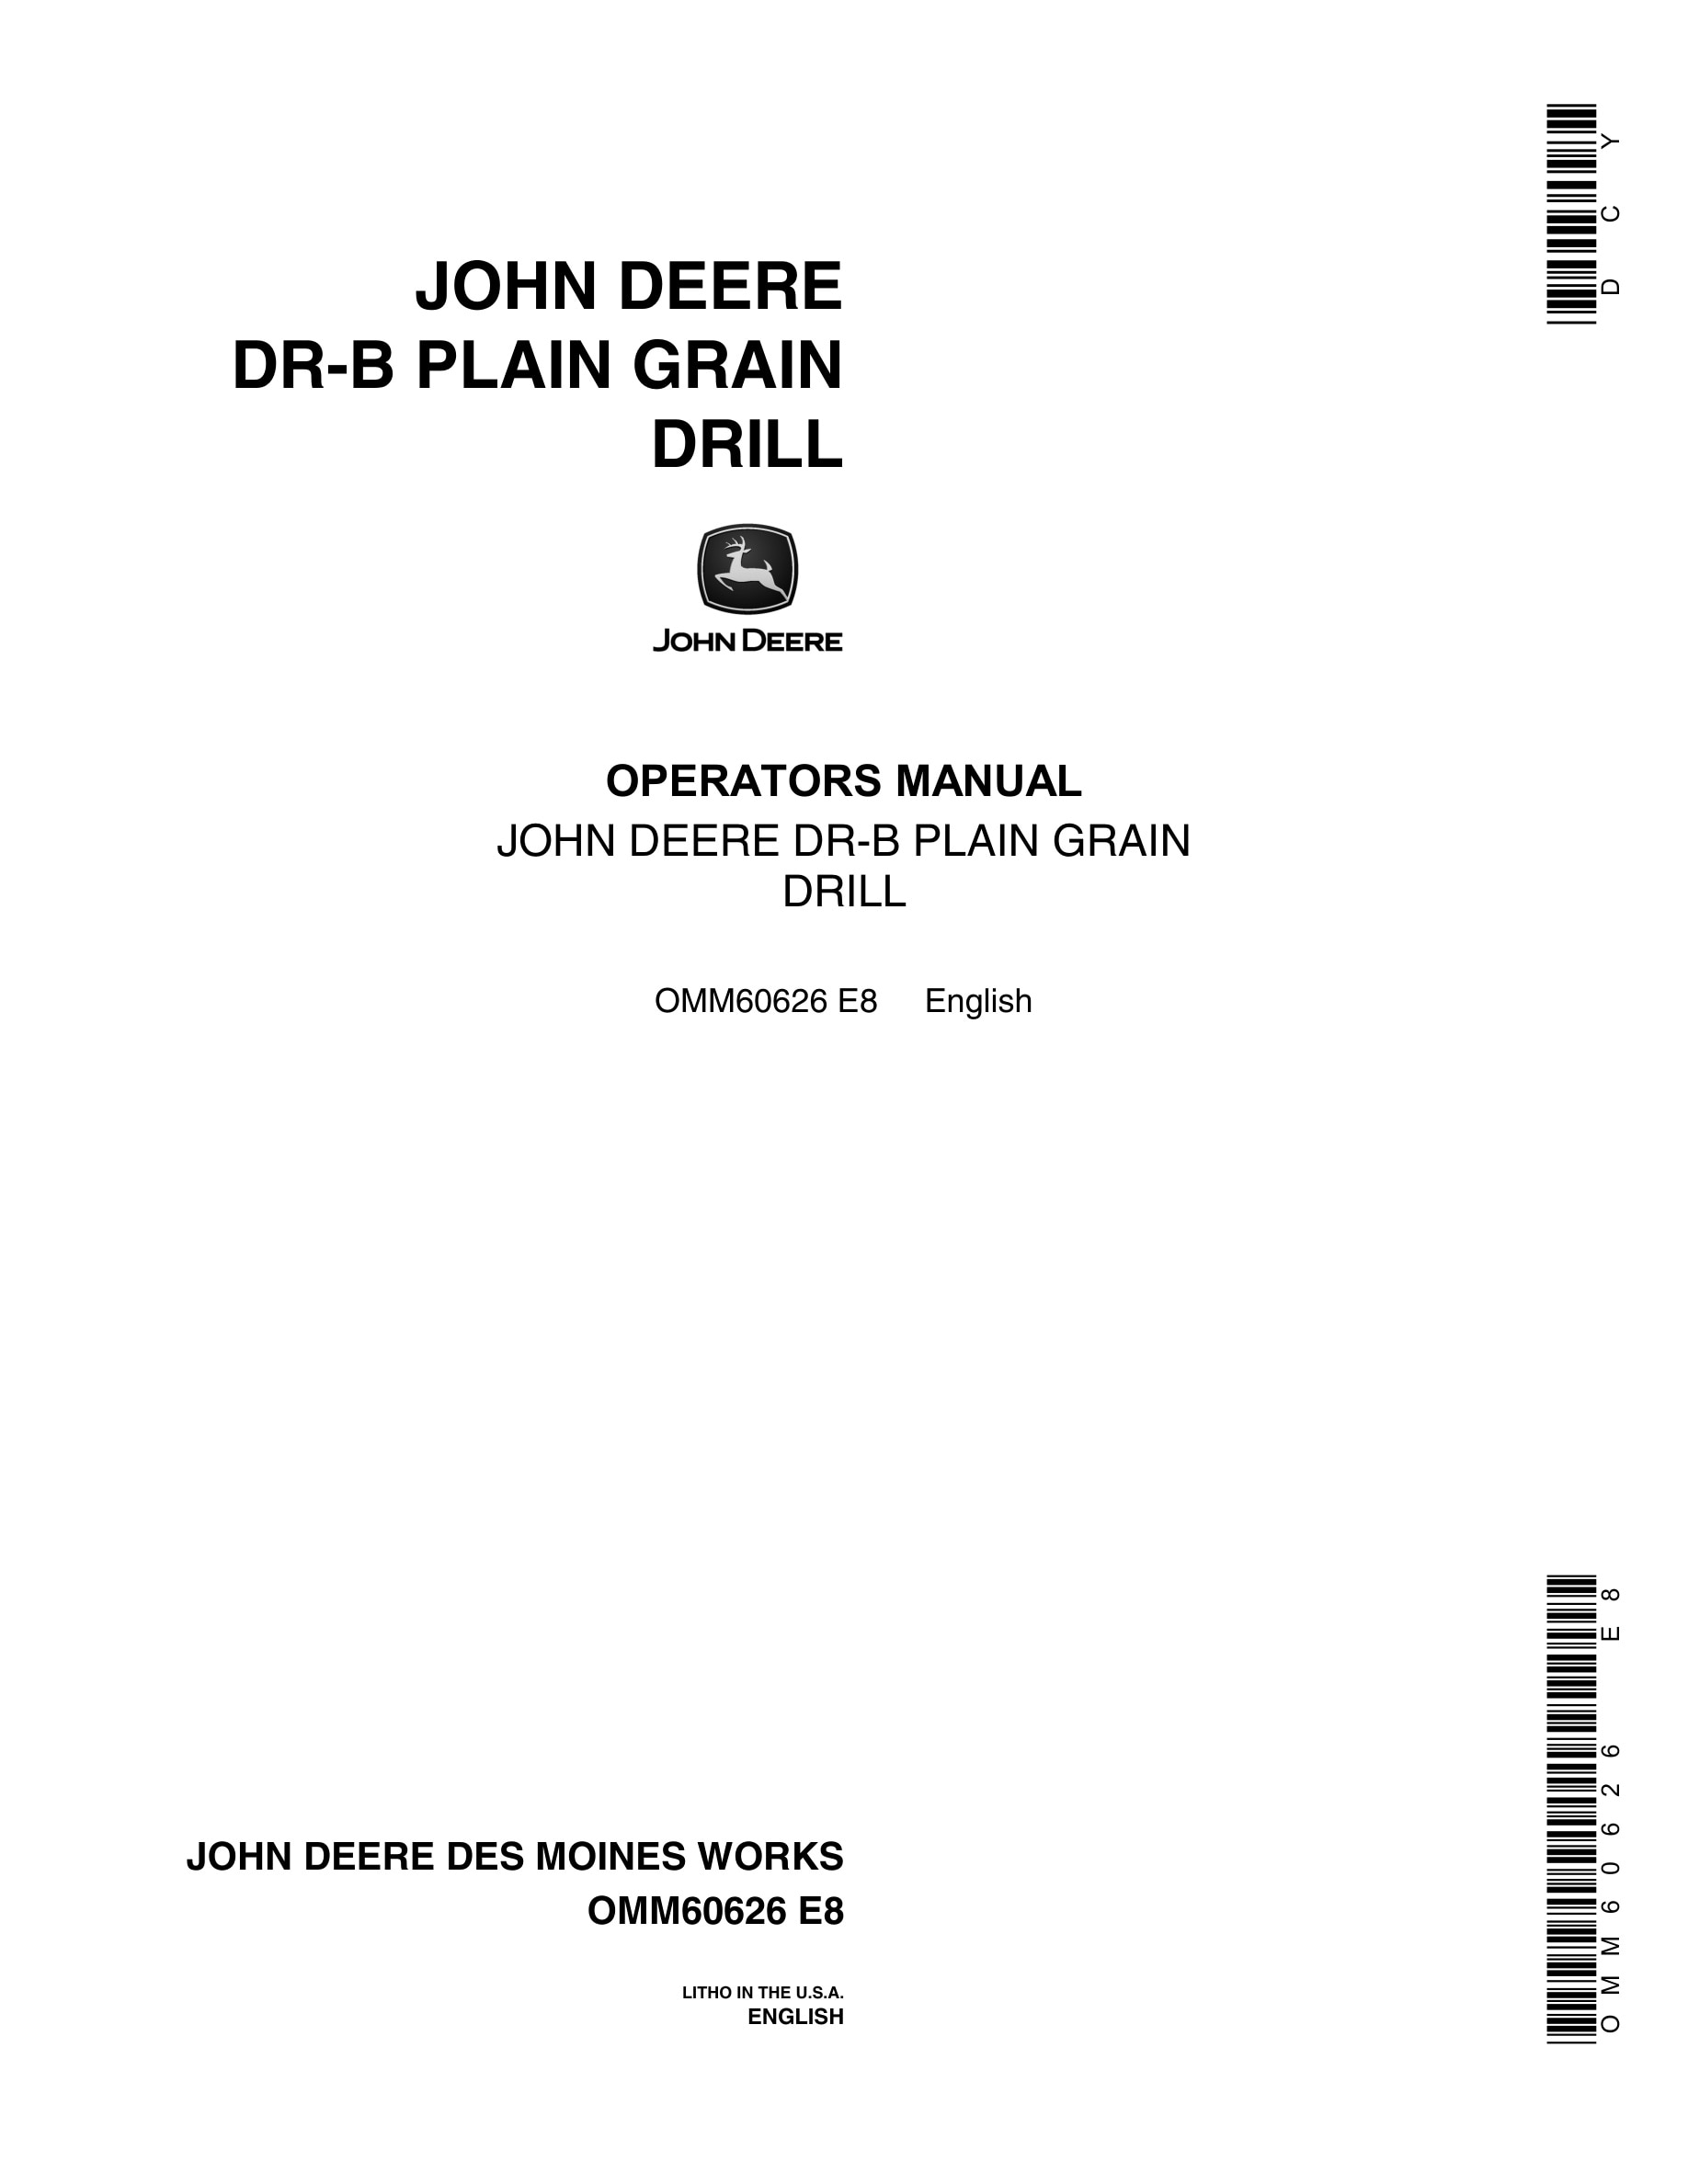 John Deere DR-B PLAIN GRAIN DRILL Operator Manual OMM60626-1